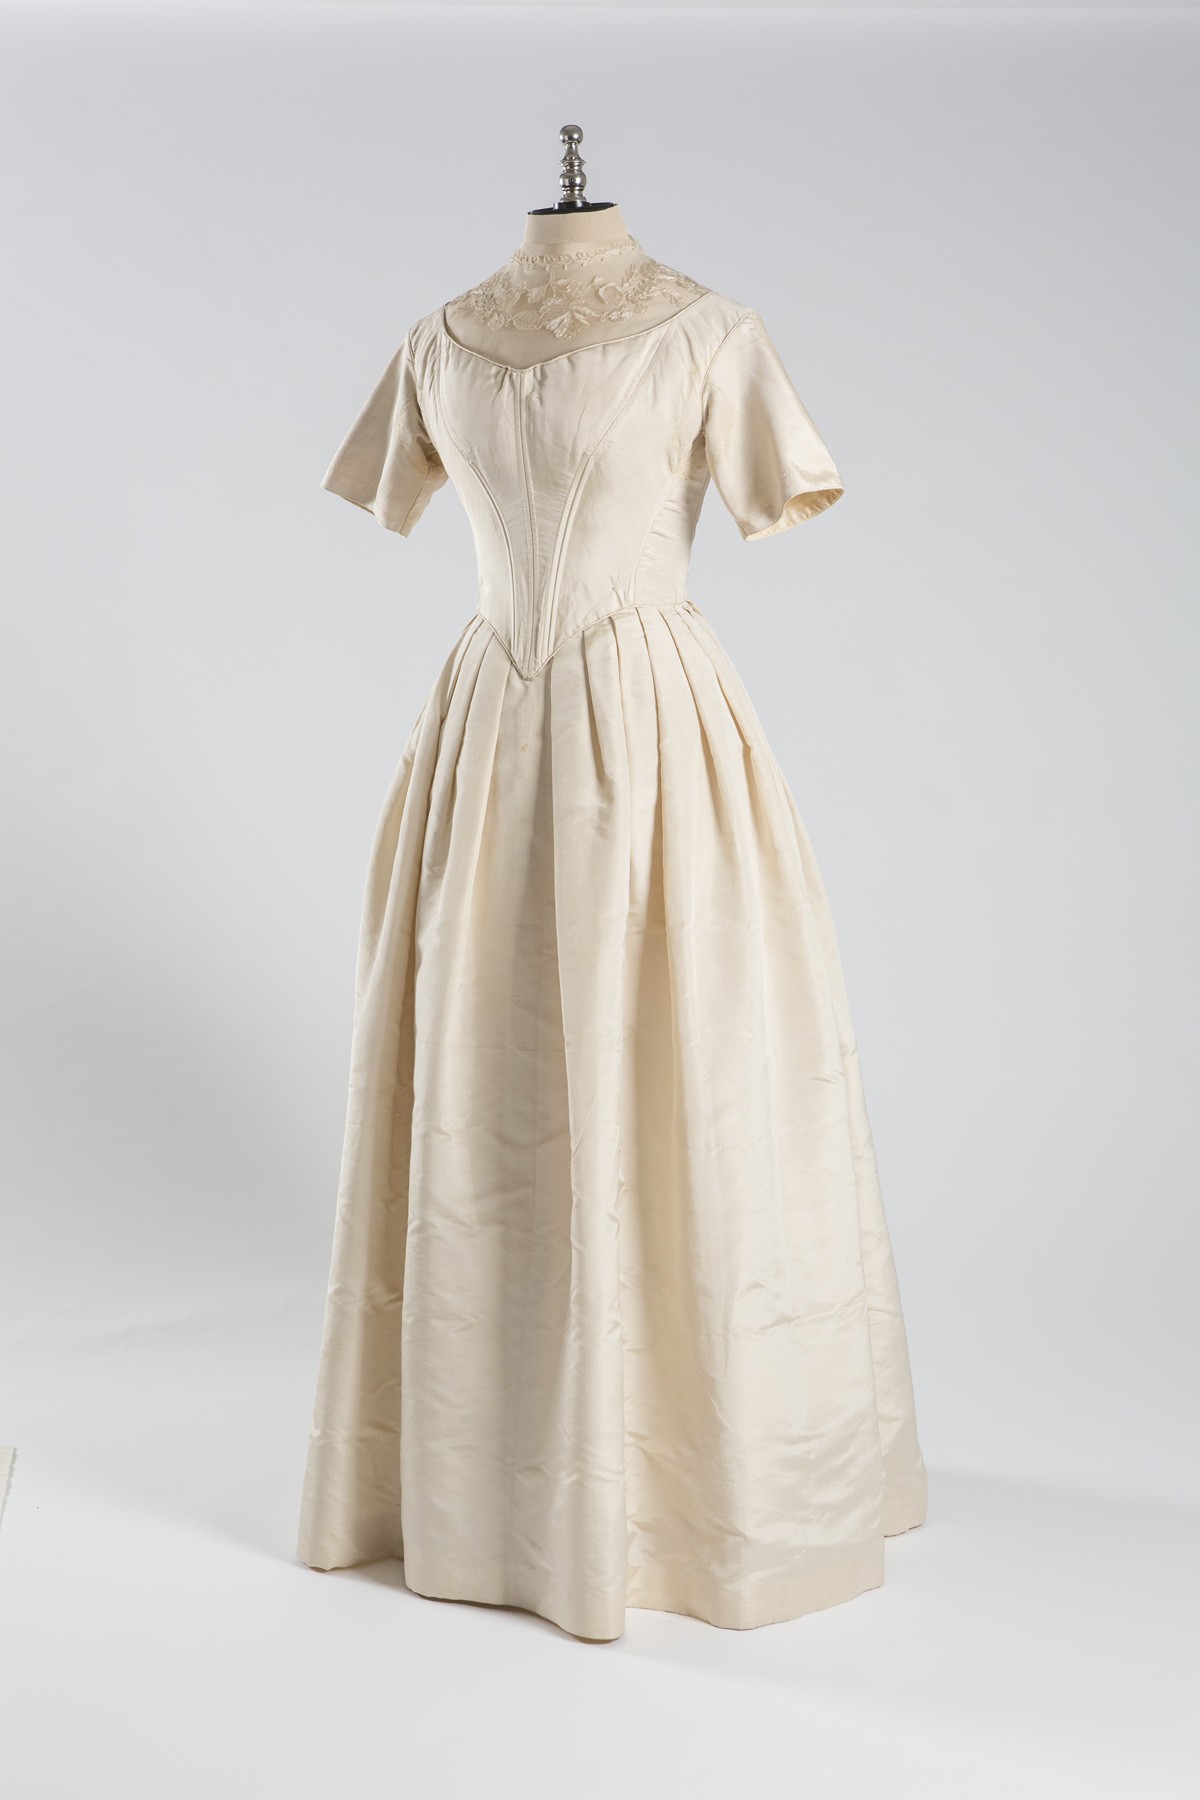 Hochzeitskleid von Serafine Jordan (Historisches Museum der Pfalz, Speyer CC BY)